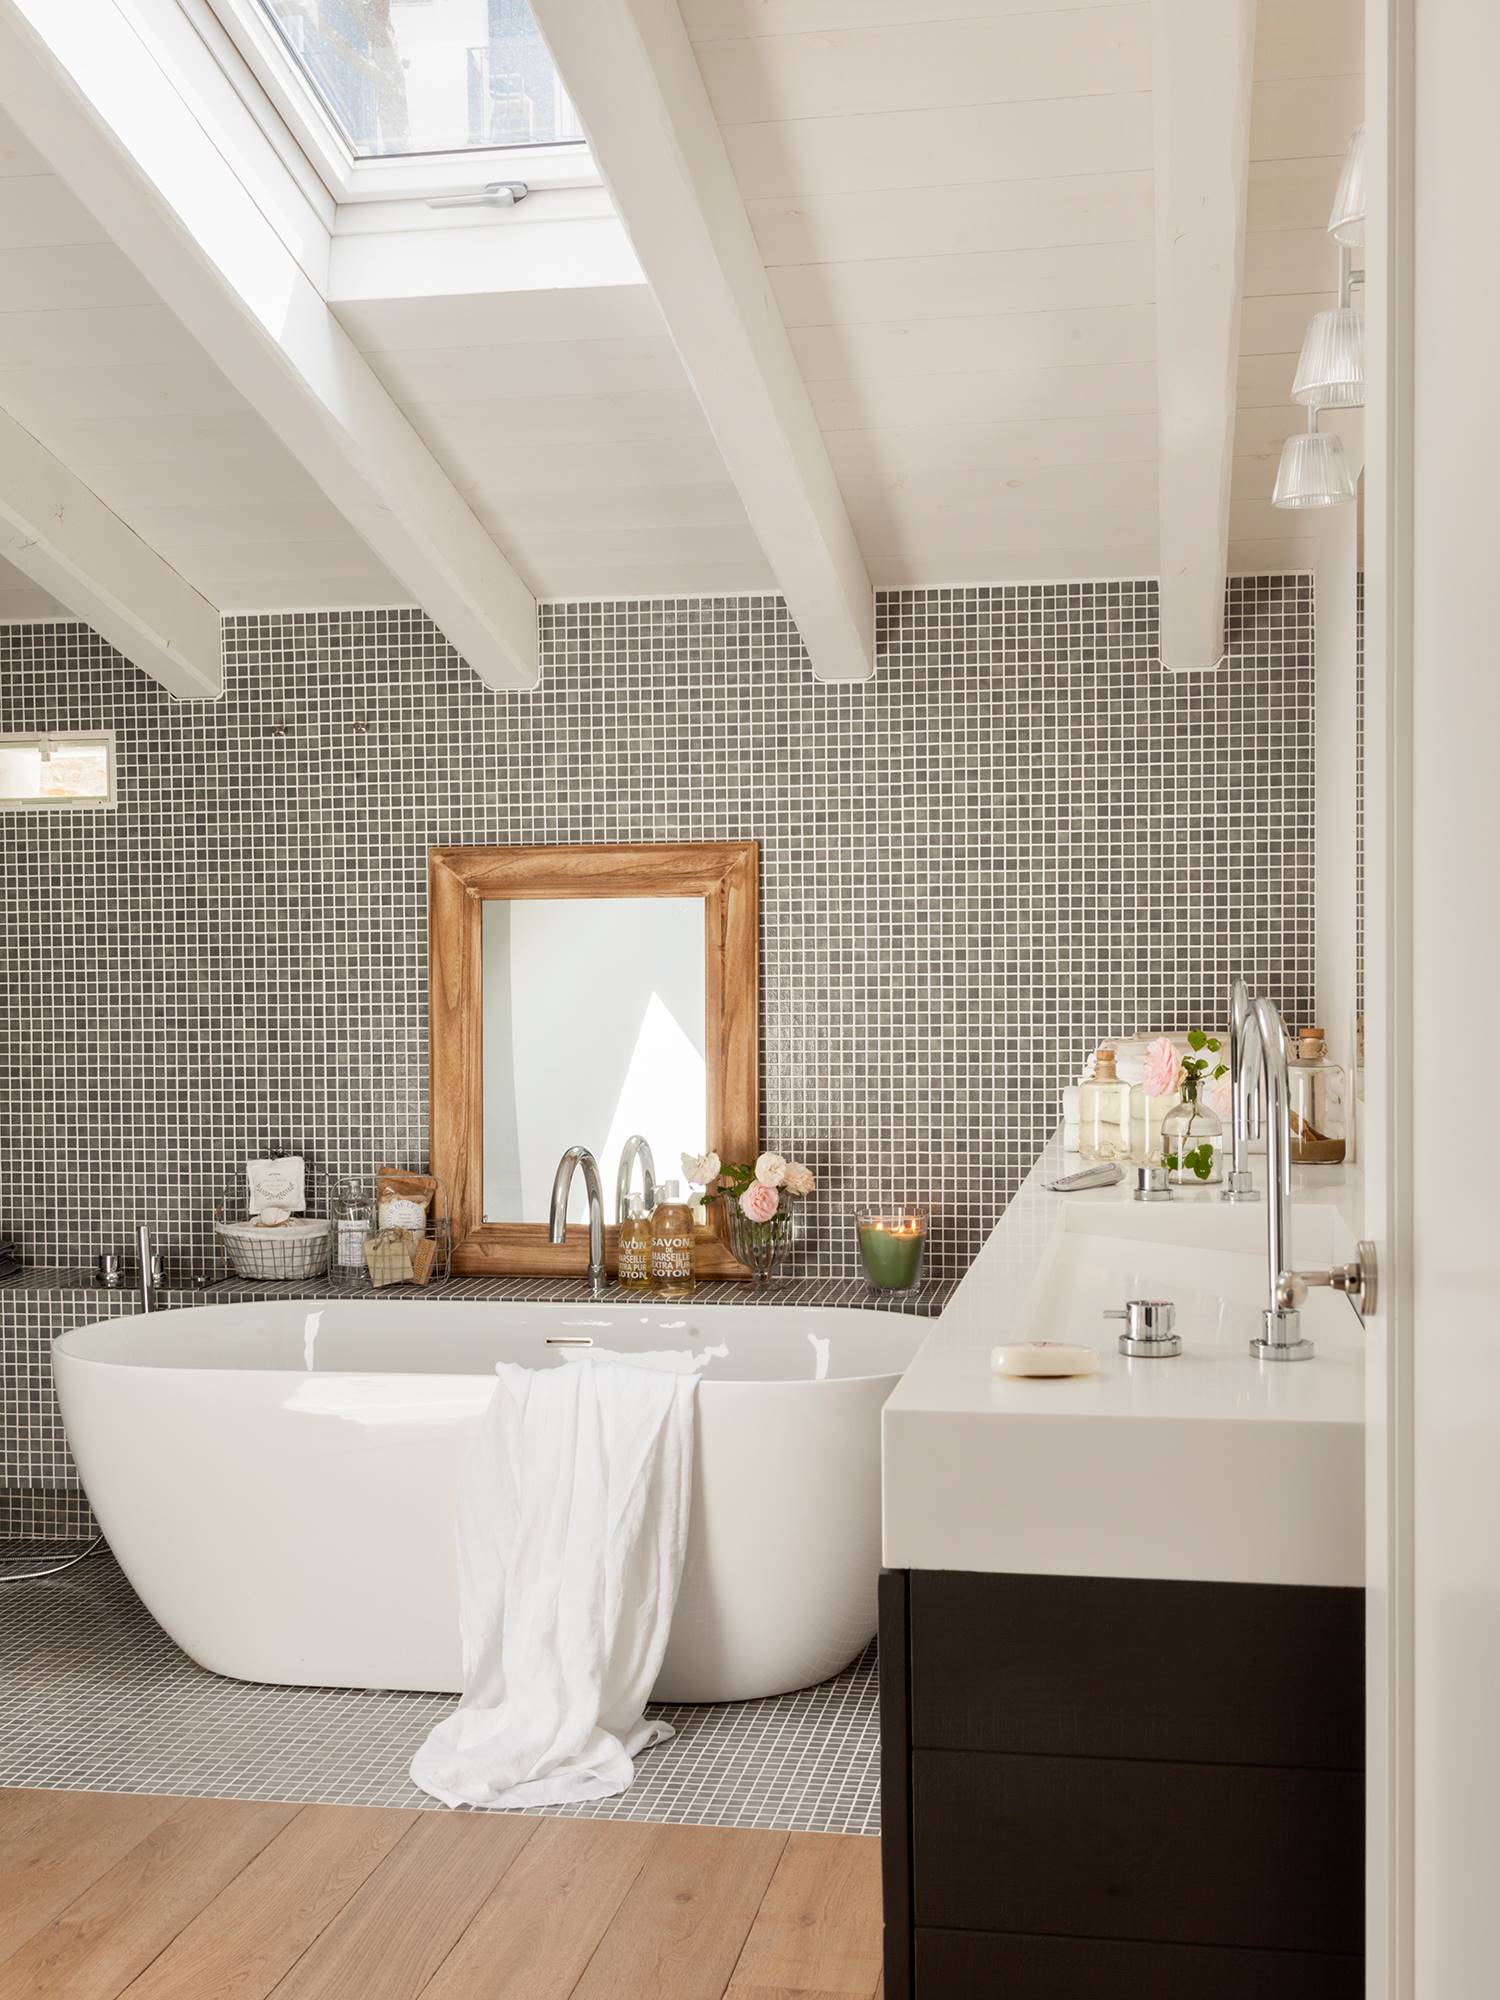 Baño reformado con bañera extenta, espejo de madera encima, azulejos pequeños y gresite. 